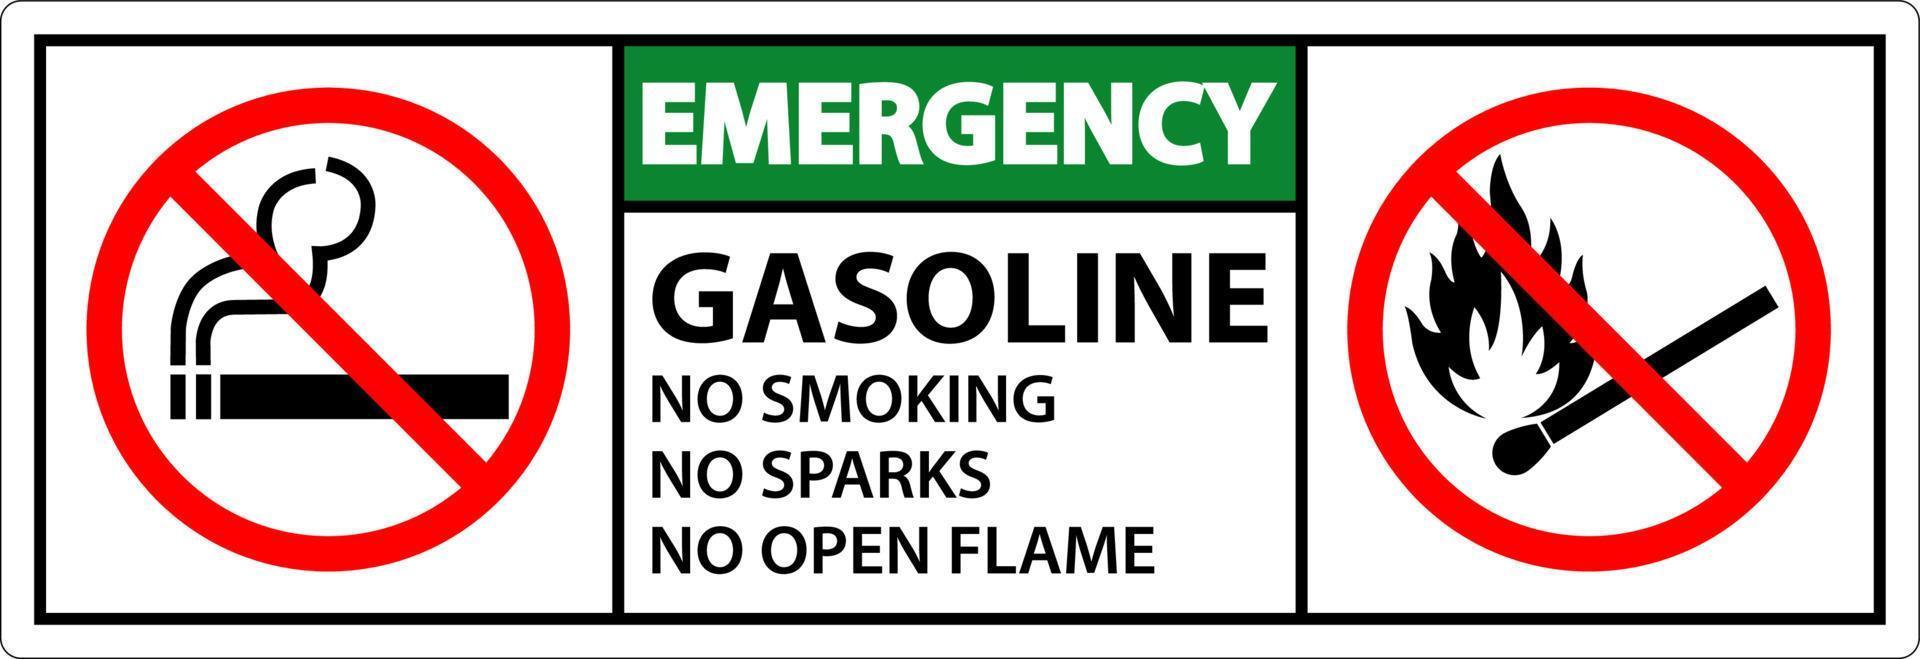 gasolina de emergencia no fumar chispas o señales de llamas abiertas vector